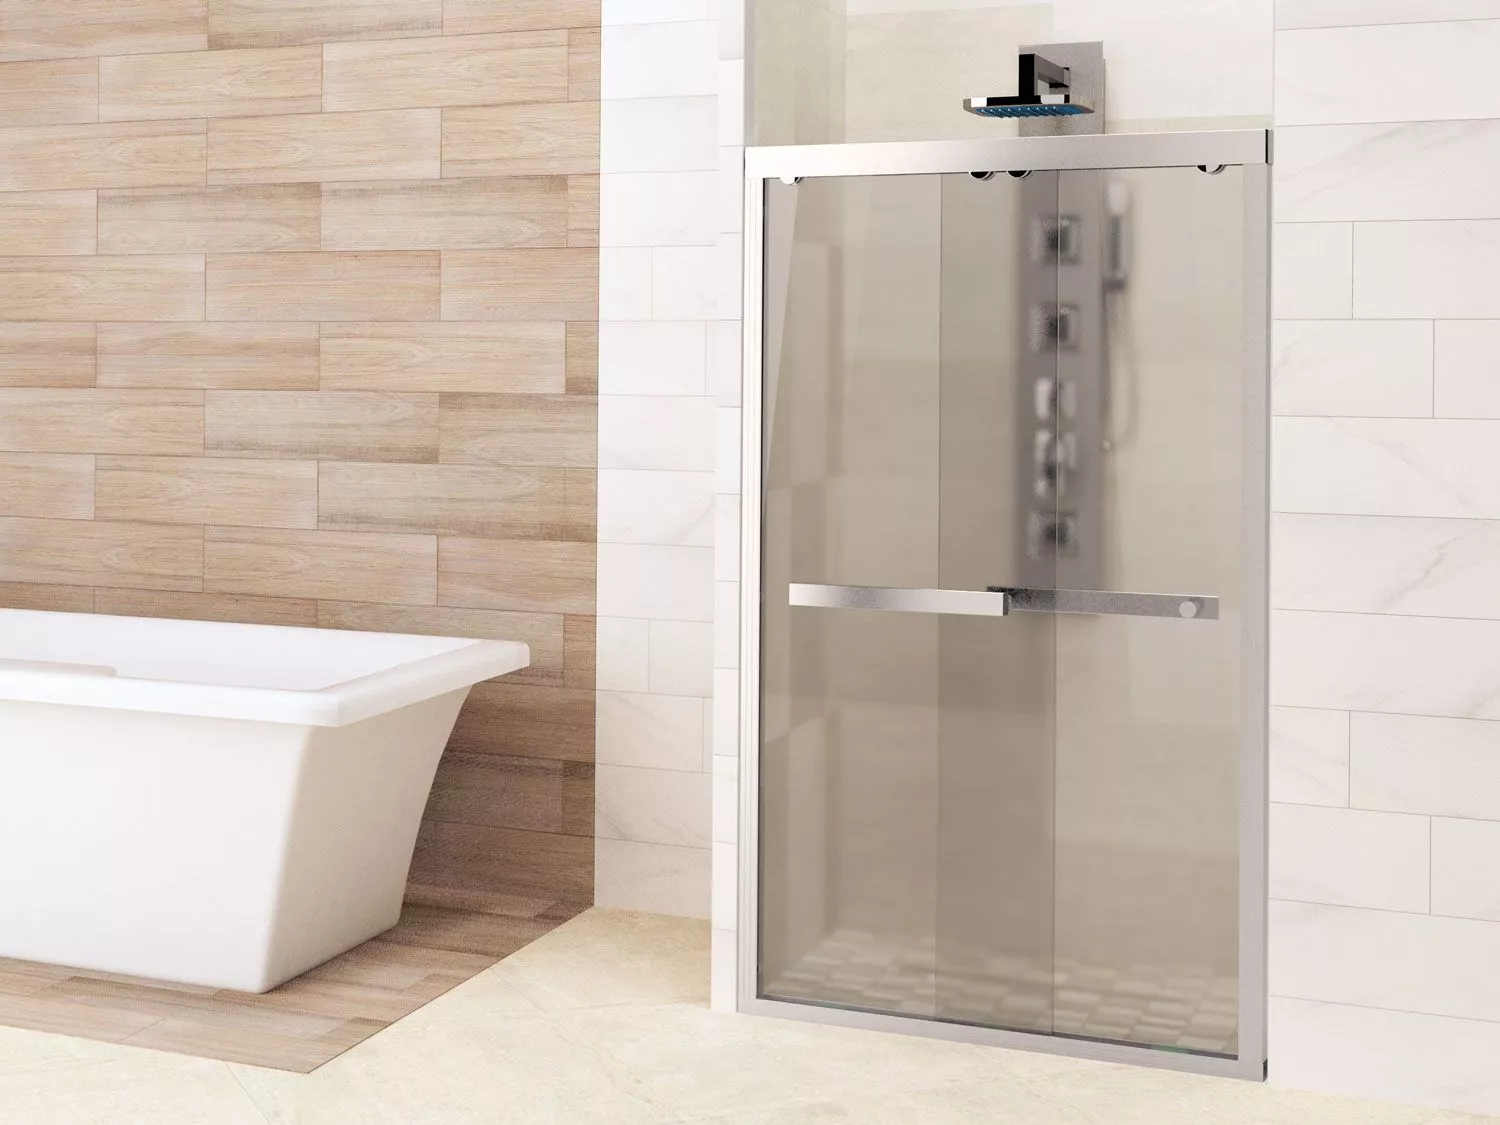 Comment changer un joint de porte de douche?